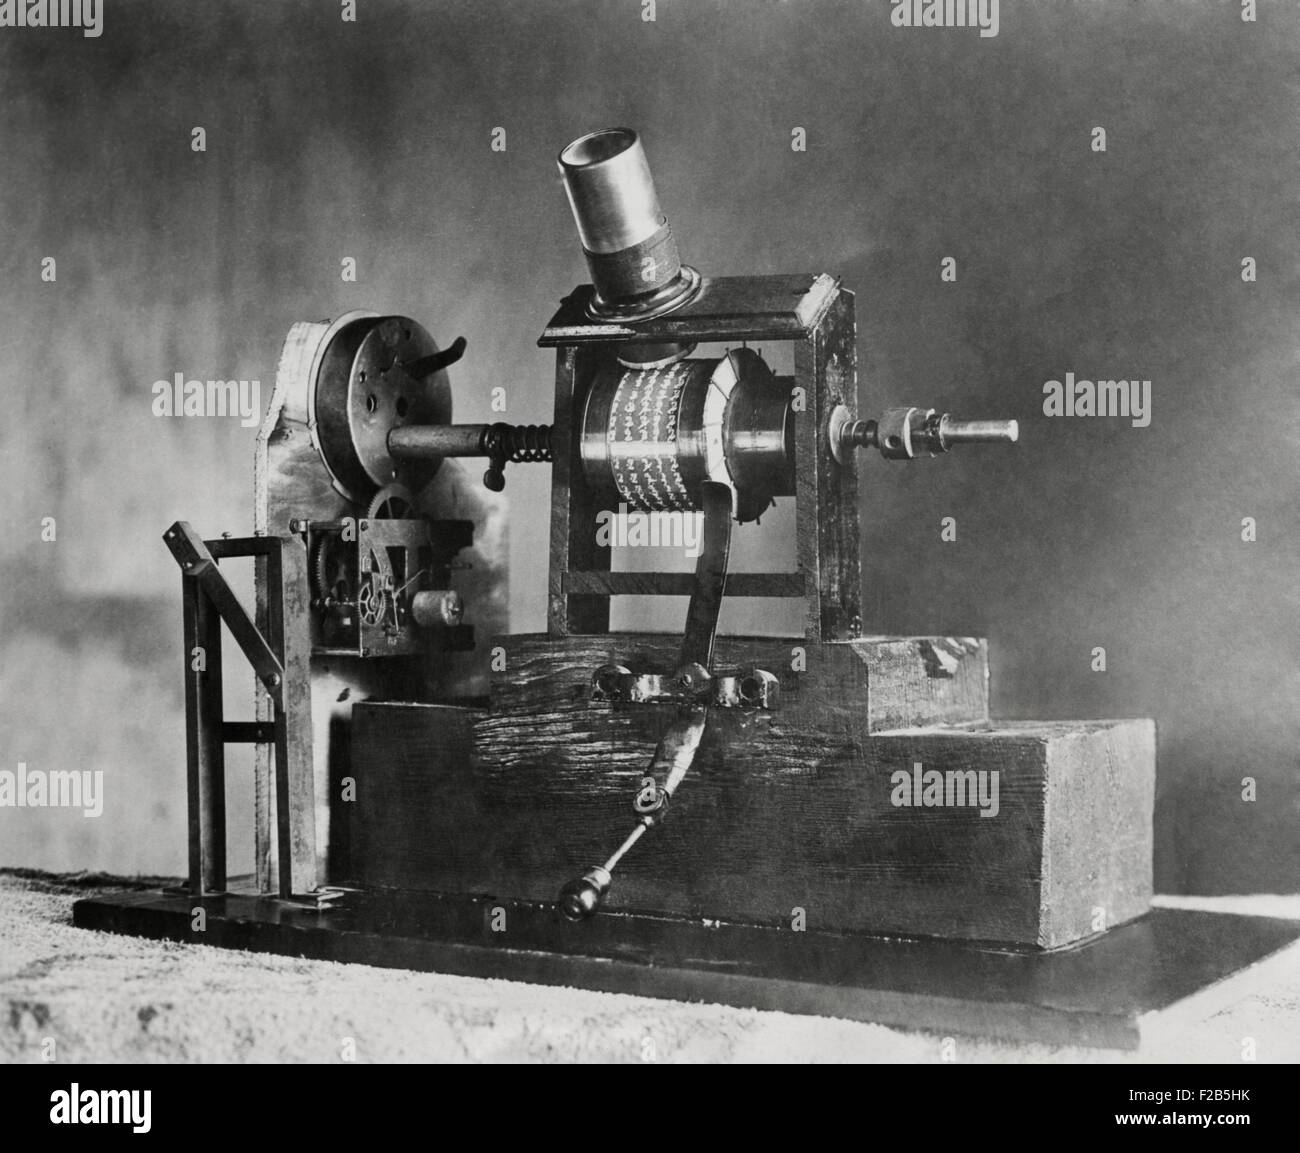 Edisons erste Film Maschine, das Kinetoskop, war ein "Talkie". Im Jahre 1886 wurde das Uhrwerk einer Welle verursacht die kleinen Bilder scheinen sich zu bewegen durch die Lupe betrachtet. Gleichzeitig konnte die synchronisierte Sounds aus dem Wachs-Datensatz auf der rechten Seite des Films über Kopfhörer hören. -(BSLOC 2014 17 118) Stockfoto